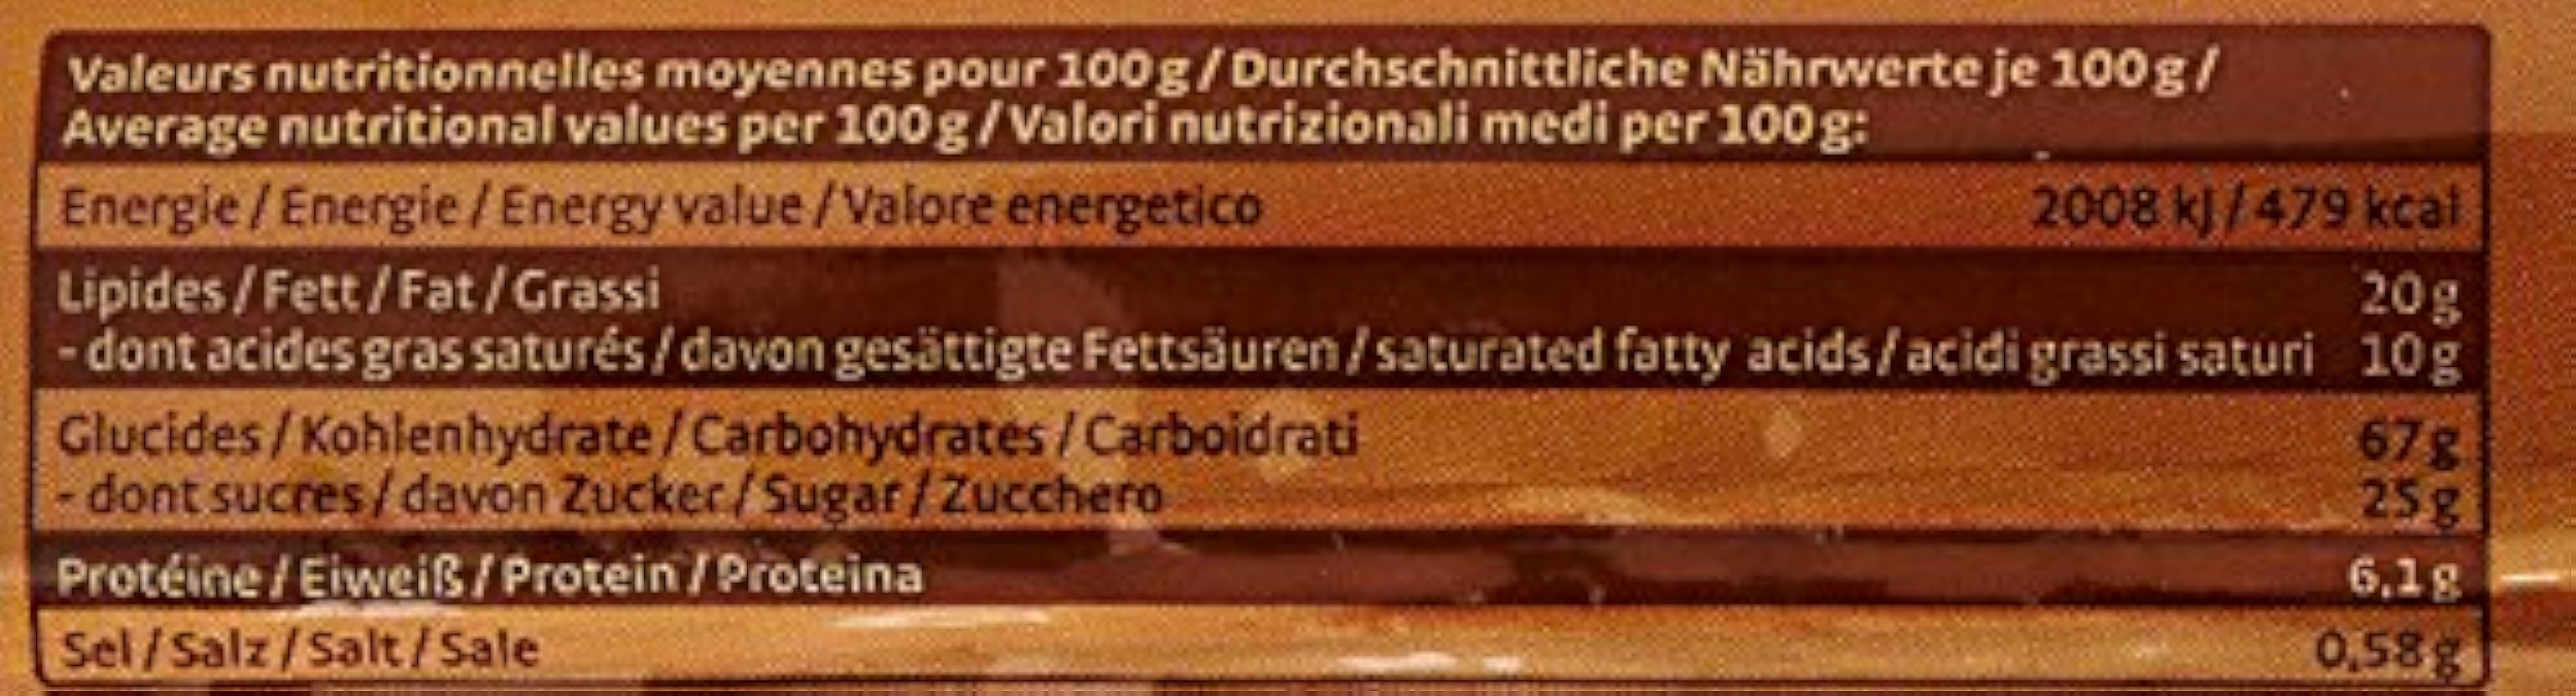 Pural Biosbis Biscuits Fourrés Ronds au Chocolat Bio 300g MJLV9LUO